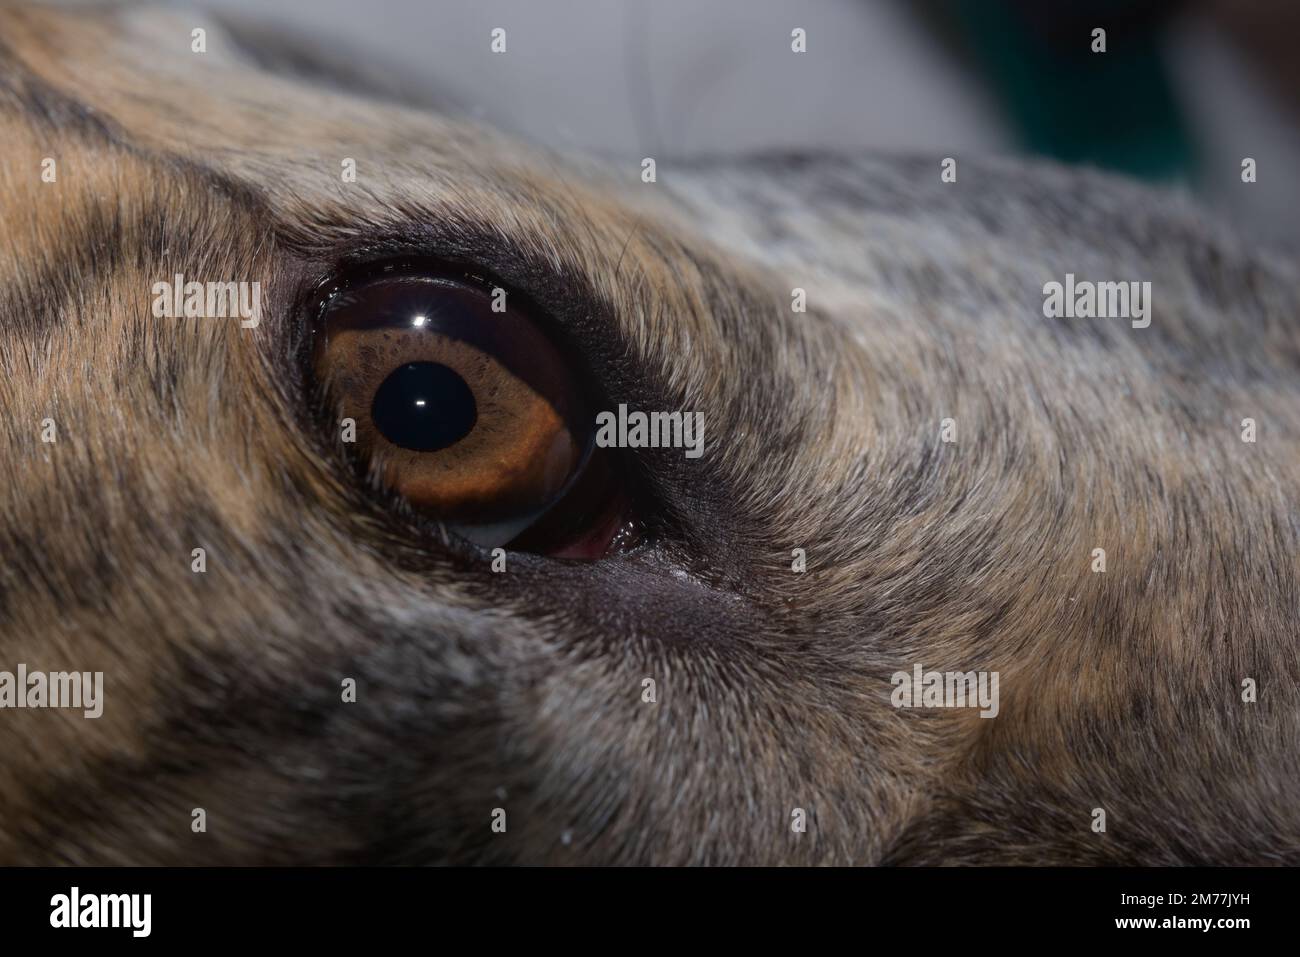 Erstaunliche Details in brauner Iris dieses Windhunds mit großem Auge. Kopieren Sie Platz im oberen und rechten Bildbereich, abstrakte Tierschönheit. Stockfoto